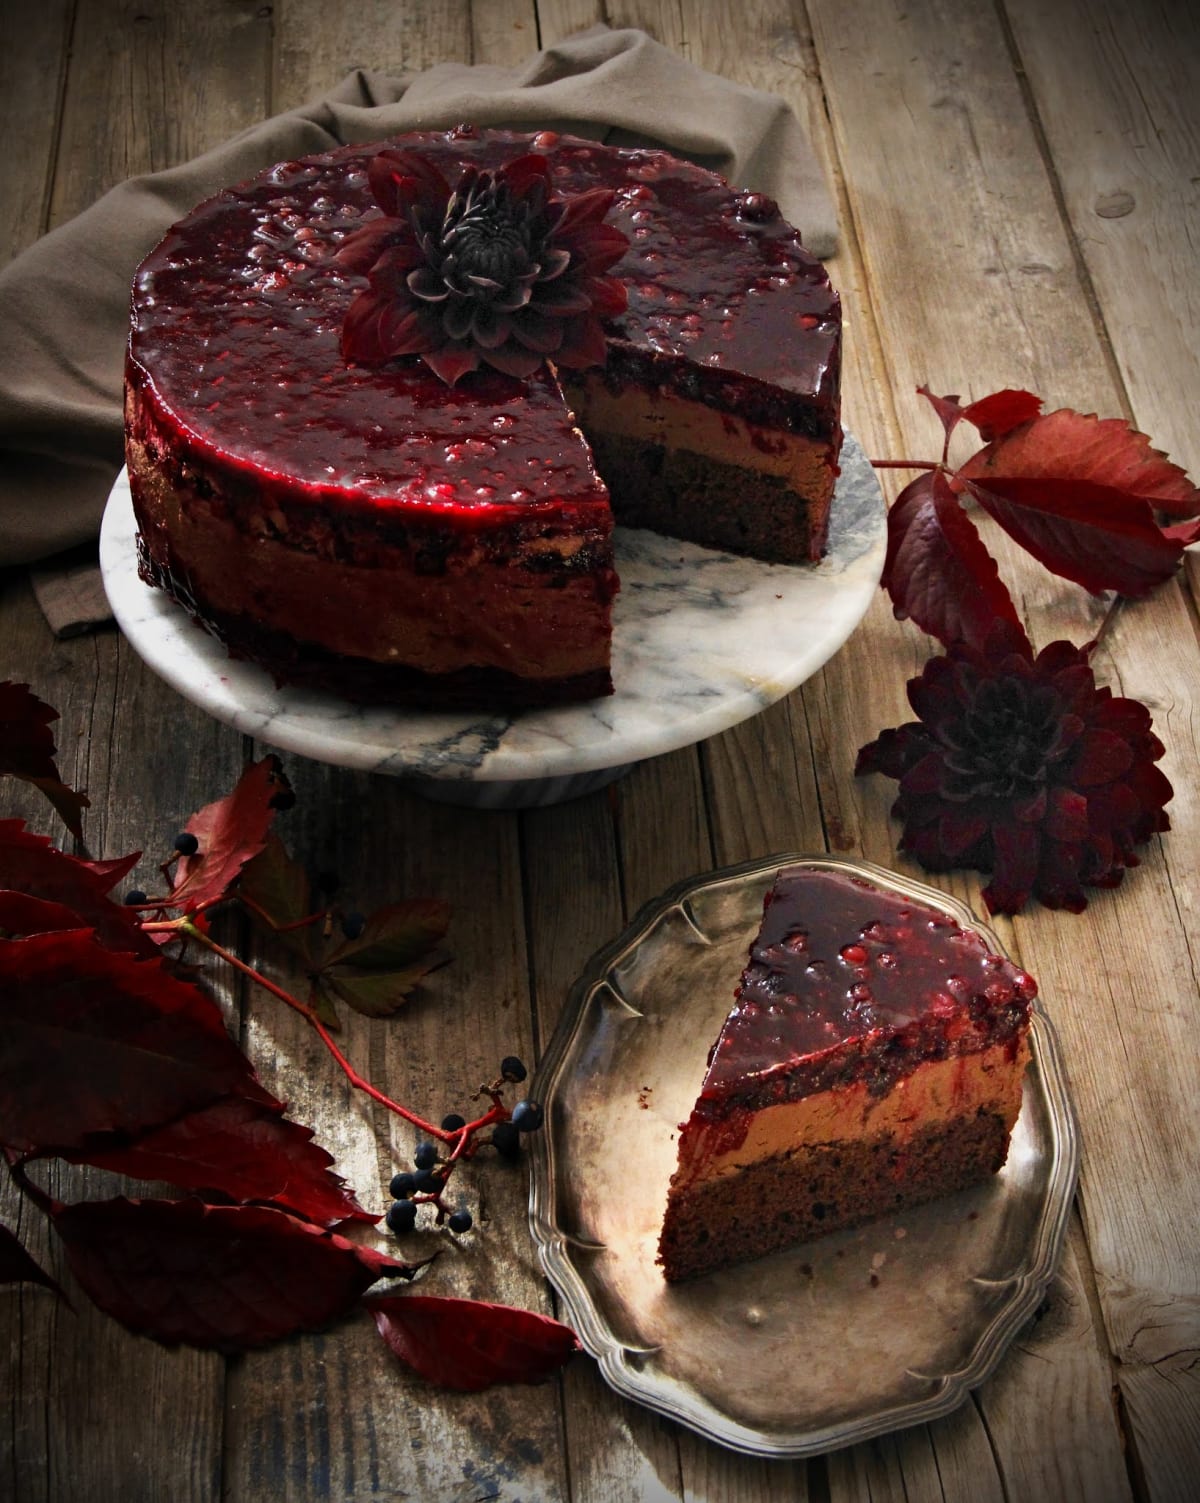 Podzimní dort s čokoládovým krémem a lesním ovocem